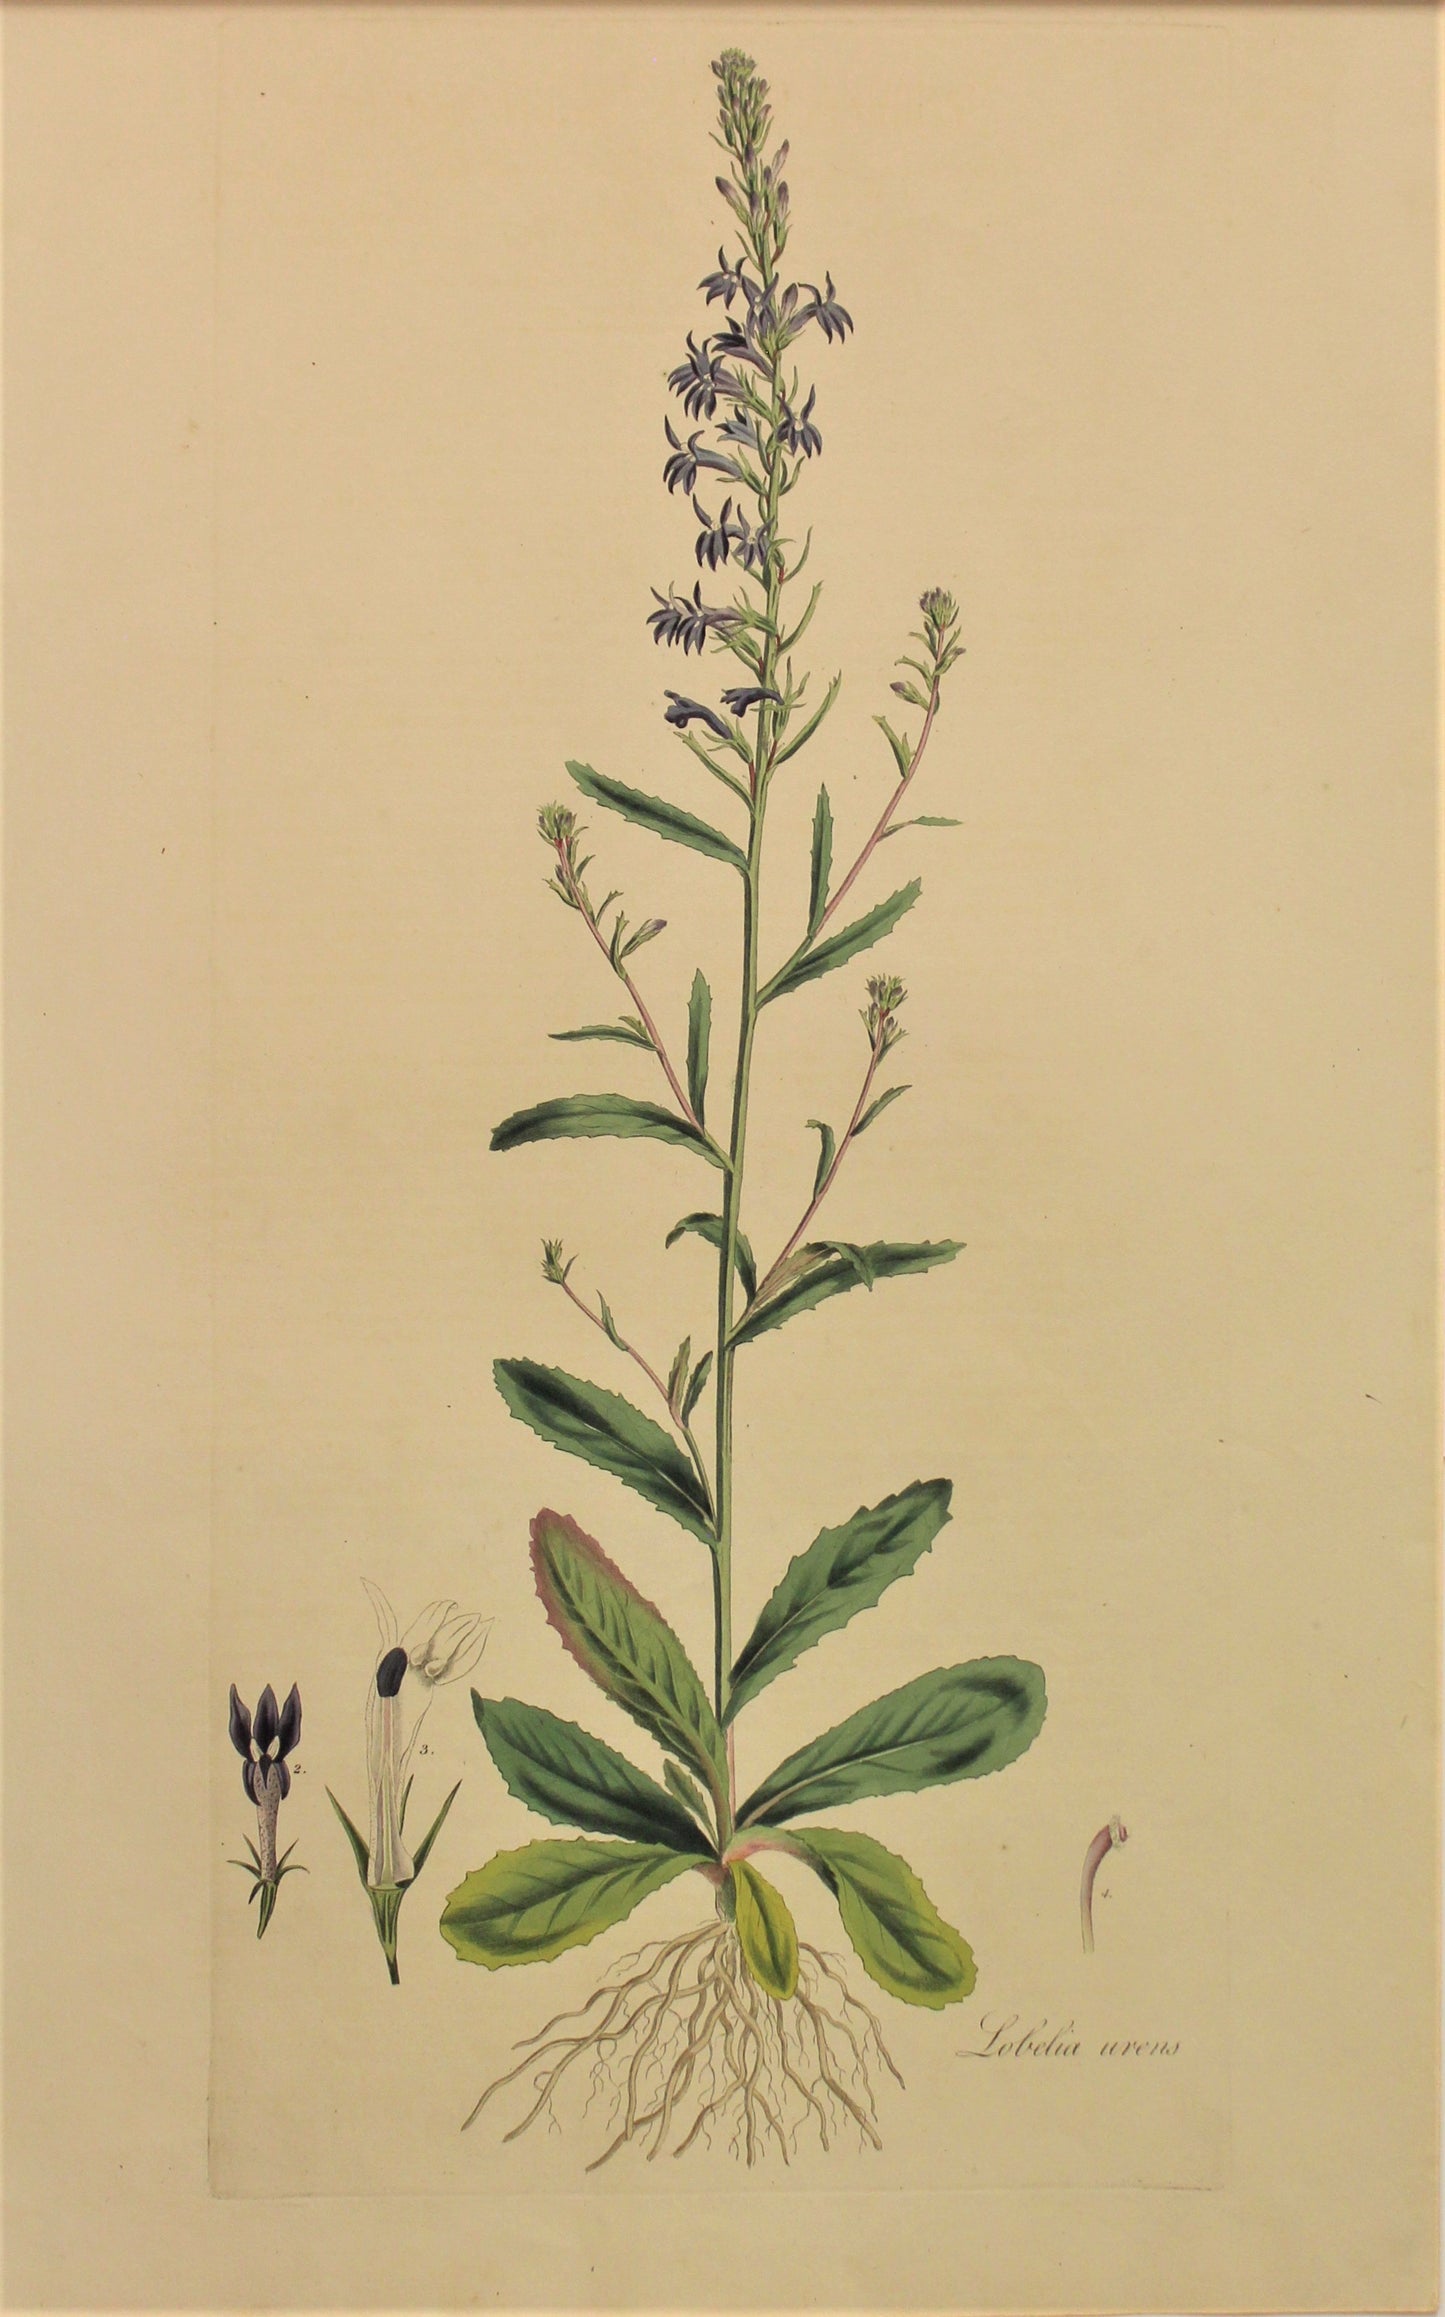 Botanical, Curtis William, Lobelia Arens, Flora Londinensis, c1817